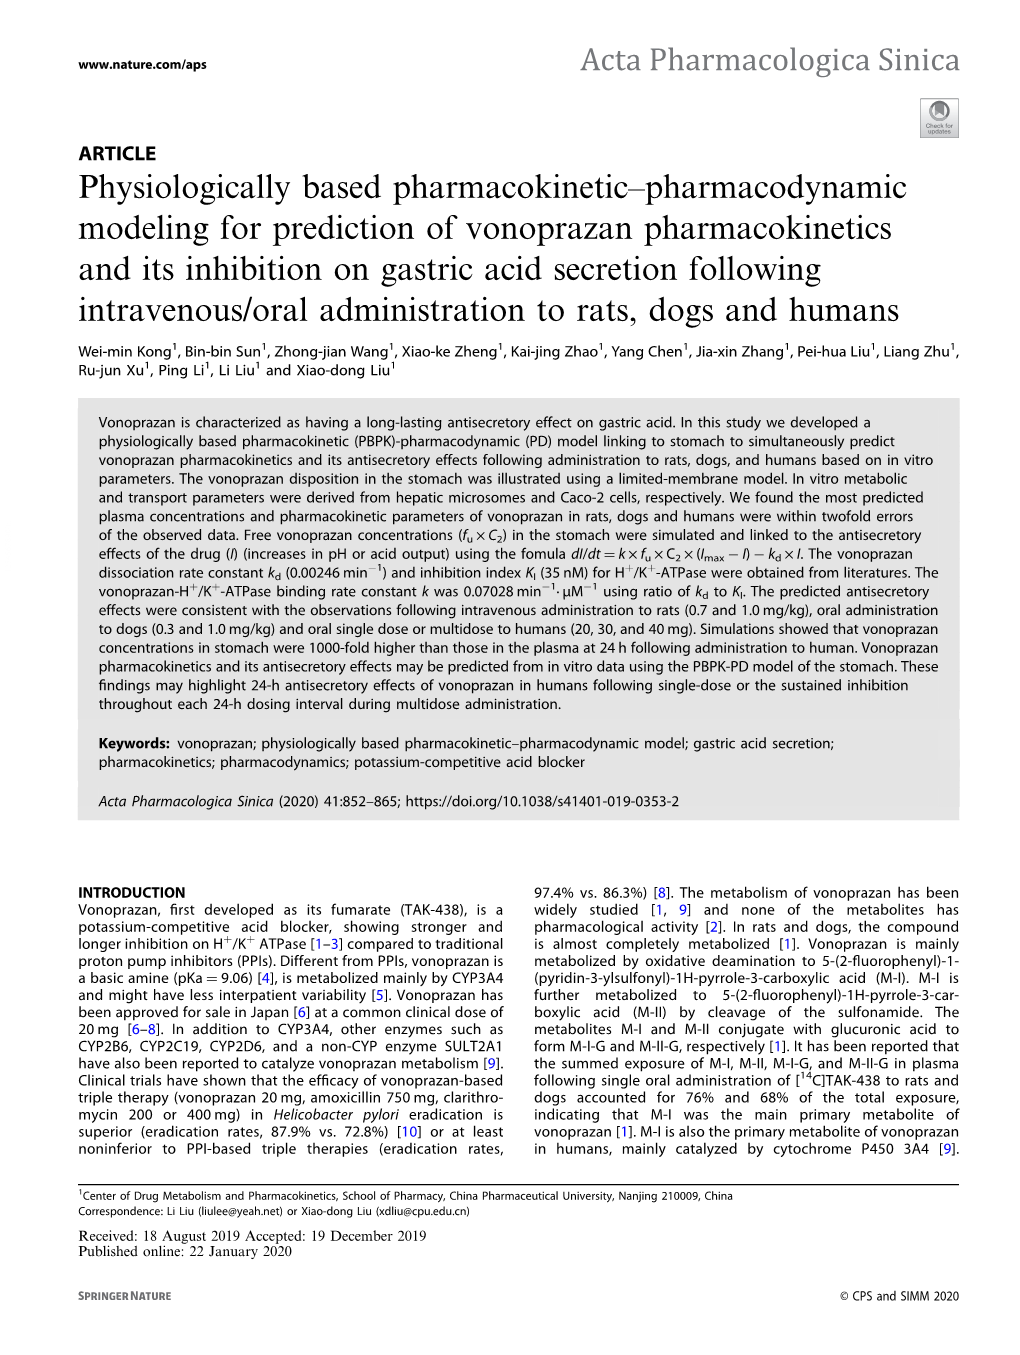 Pharmacodynamic Modeling for Prediction of Vonoprazan